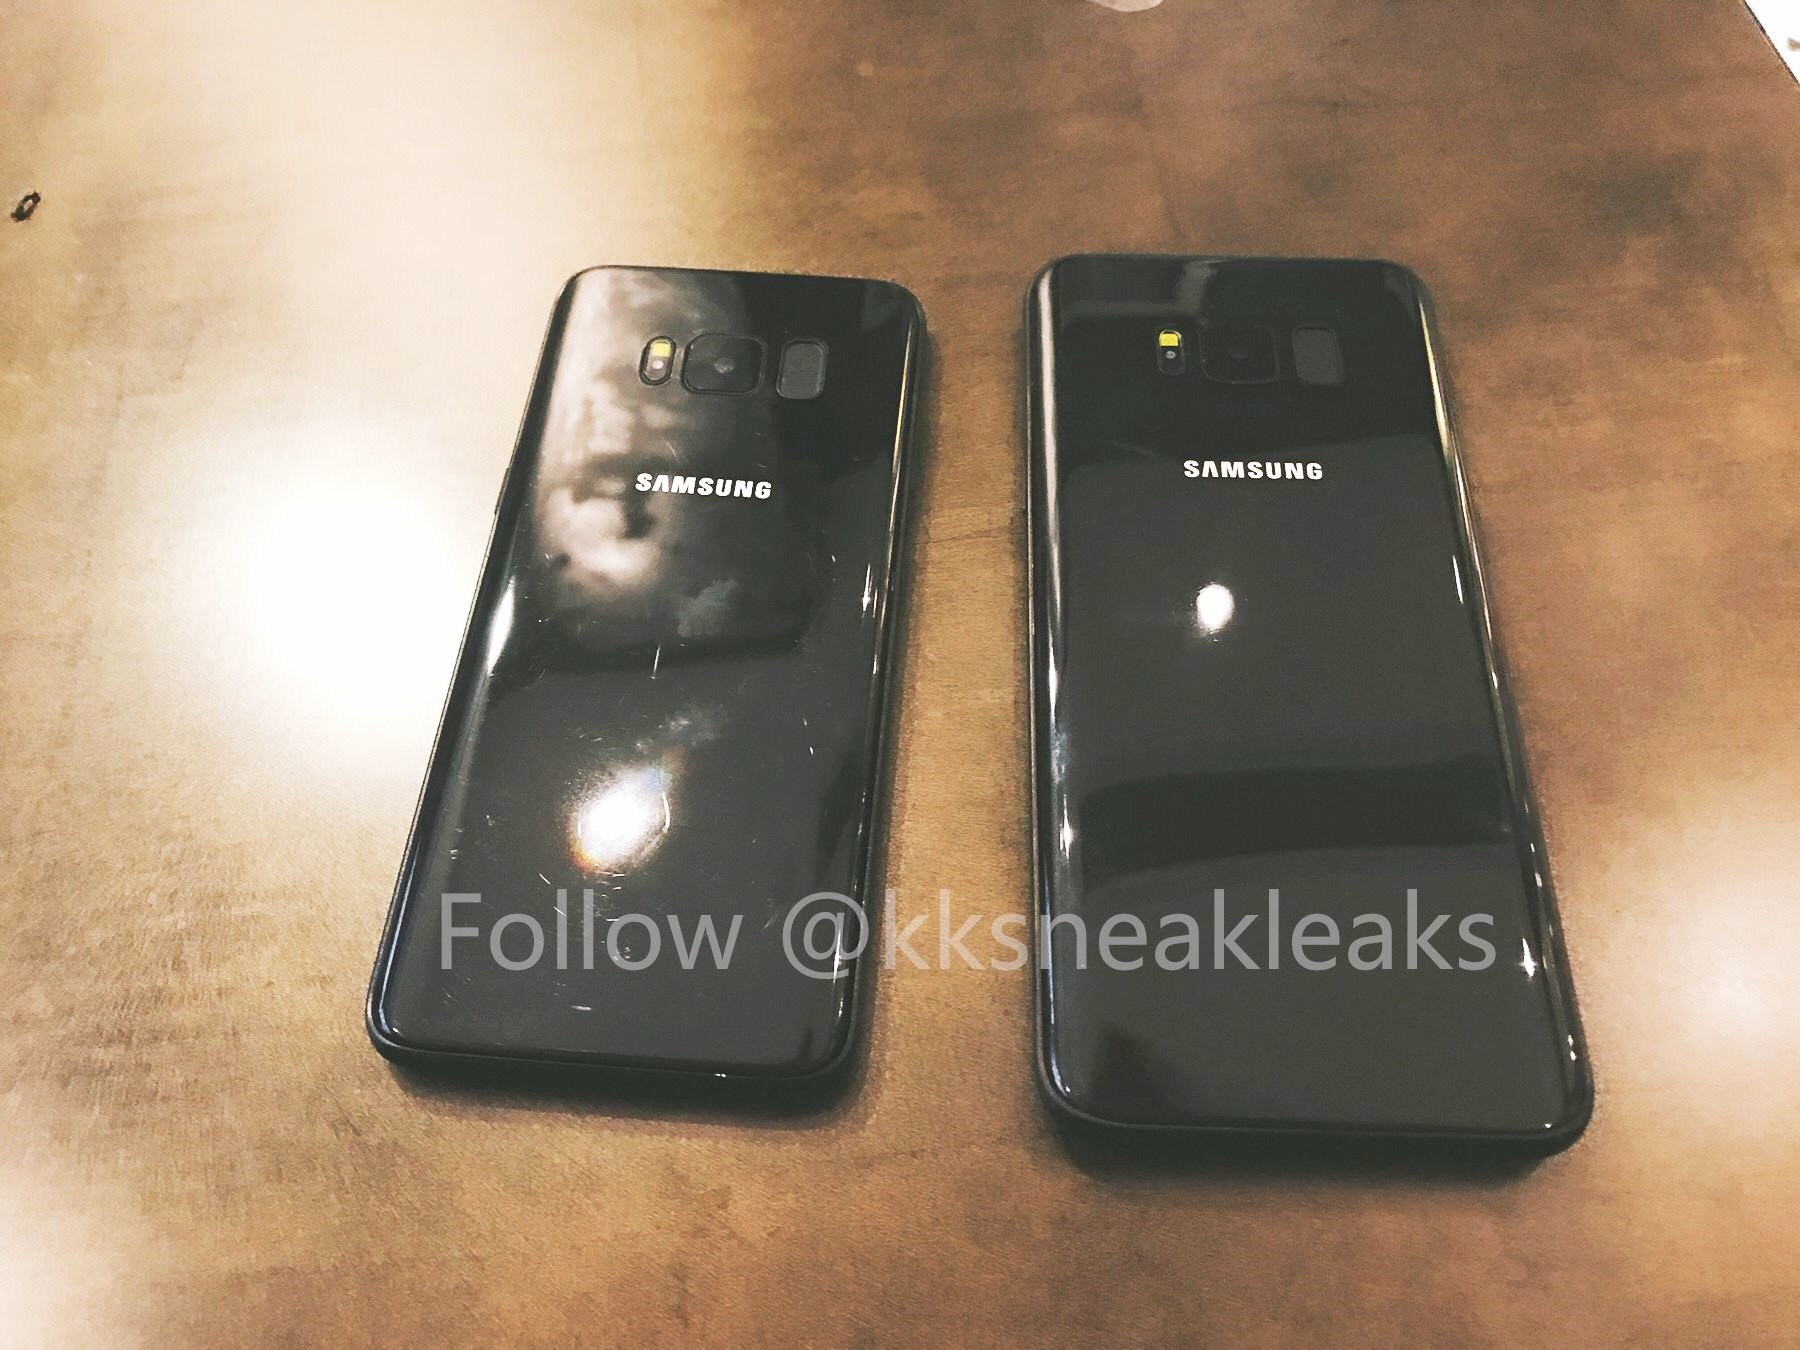 Las imágenes recién filtradas del Galaxy S8 y Galaxy S8+ confirman que no hay cámara dual en la parte posterior